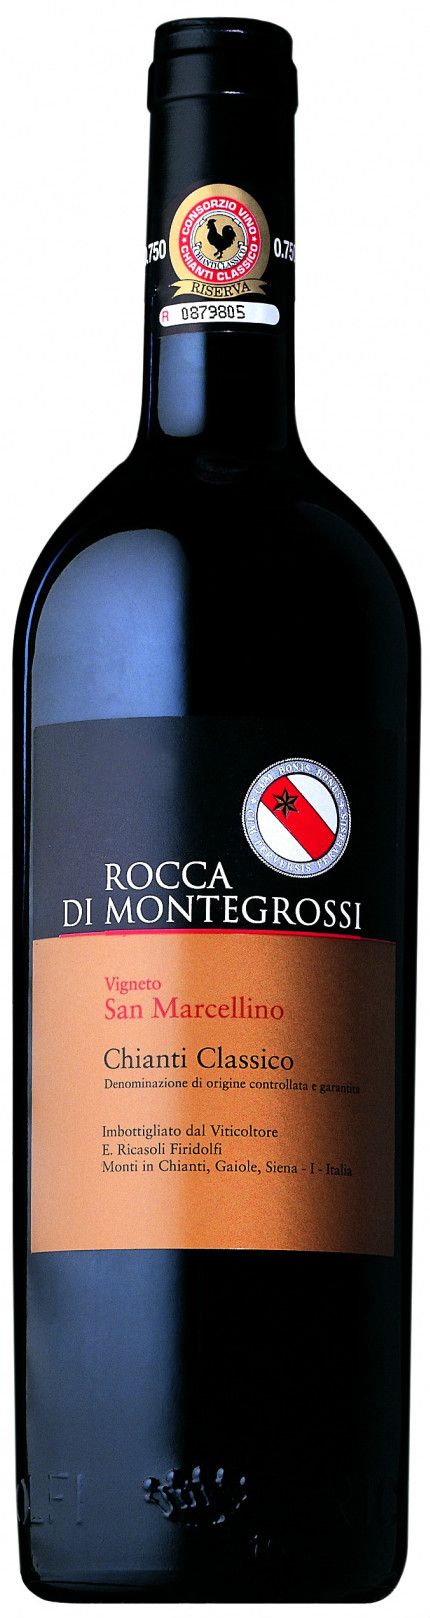 Rocca Di Montegrossi, Vigneto San Marcellino Chianti Classico, 2003